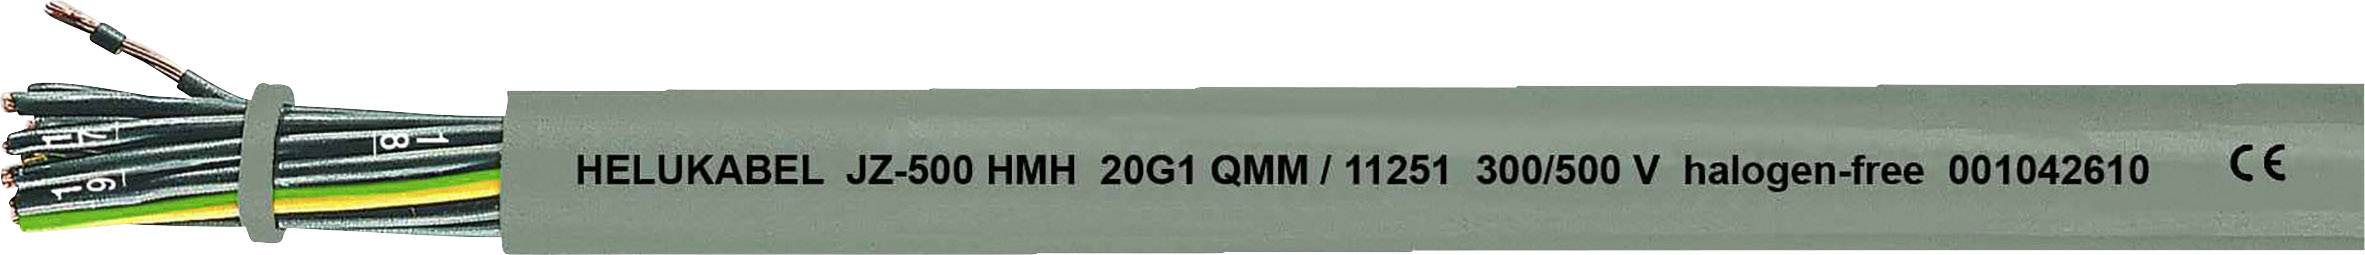 HELUKABEL JZ-500 HMH Steuerleitung 5 G 0.50 mm² Grau 11204-1000 1000 m